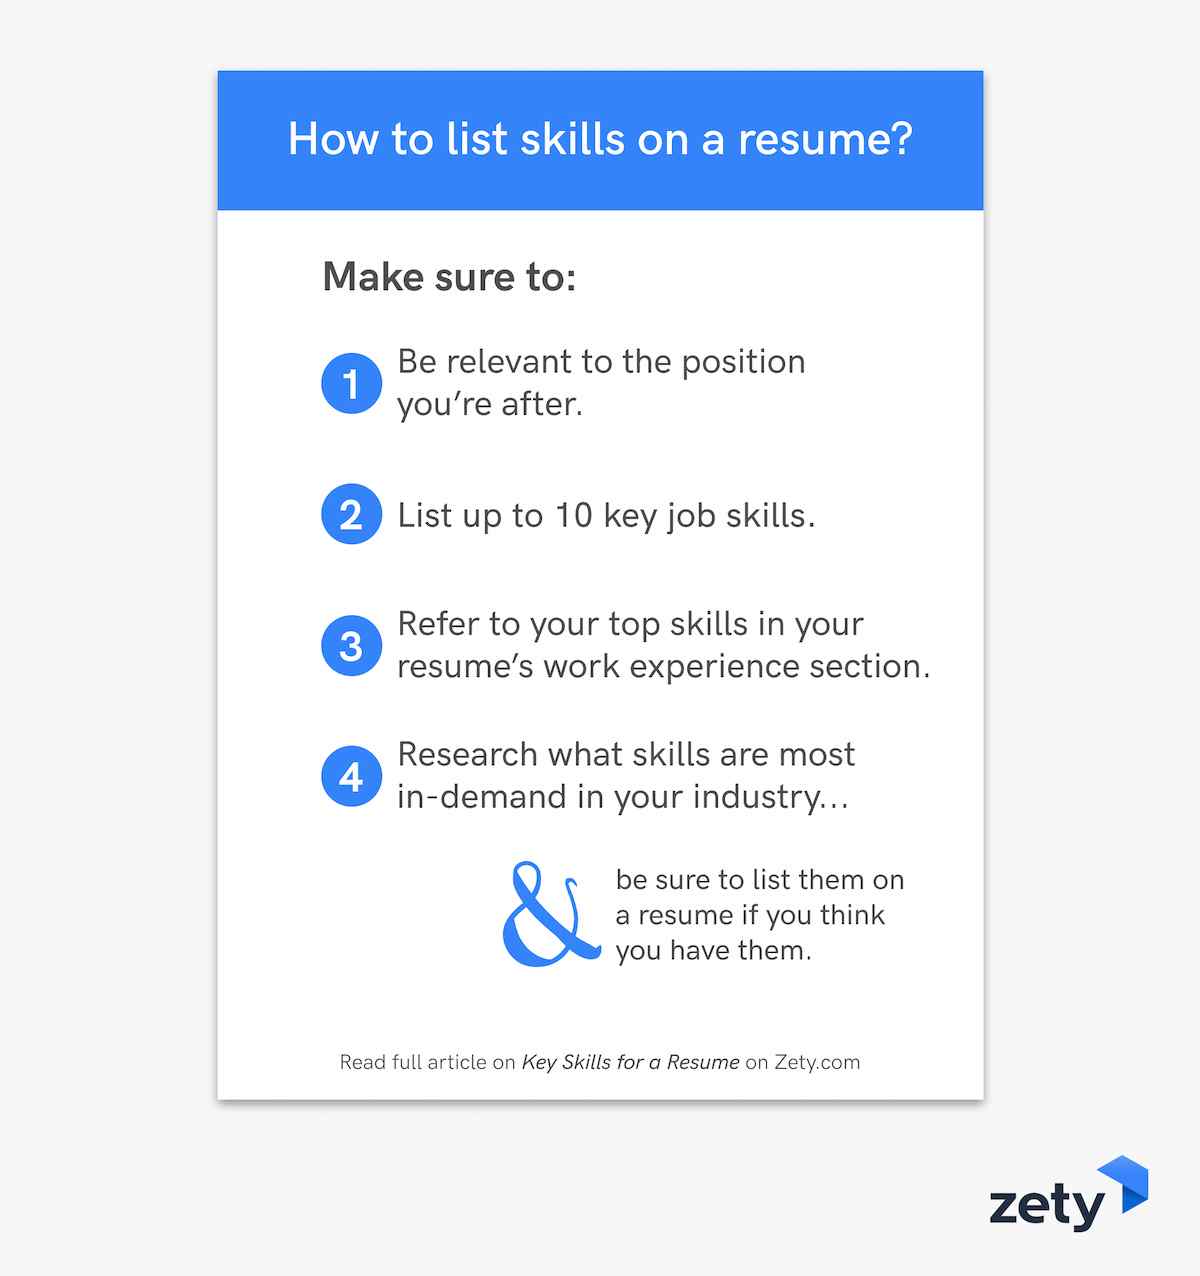 How to list skills on a resume summary